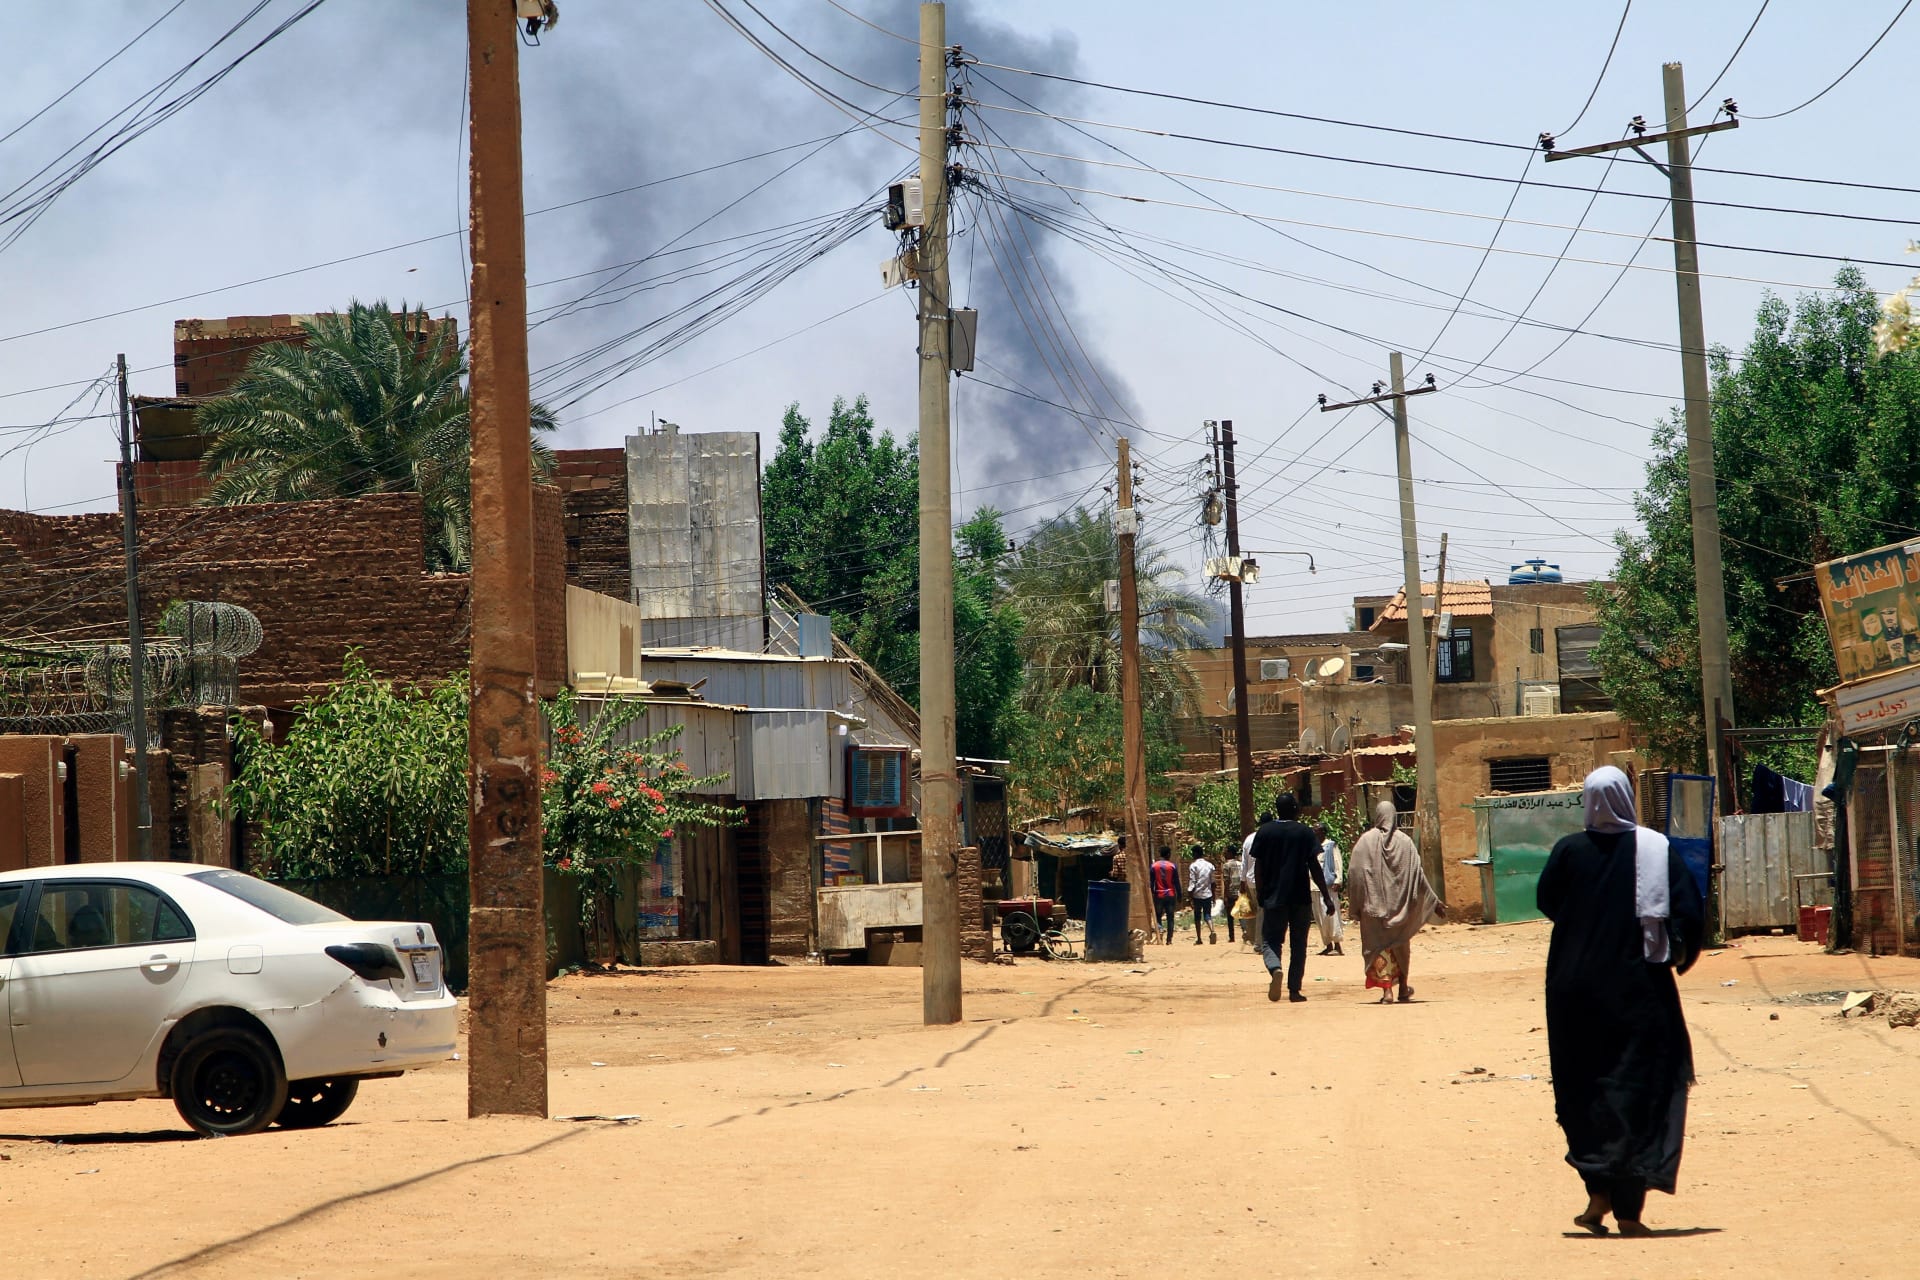 وجهت اتهاما للدعم السريع.. الأمم المتحدة: آلاف محاصرون في المناطق السكنية بسبب الصراع في السودان